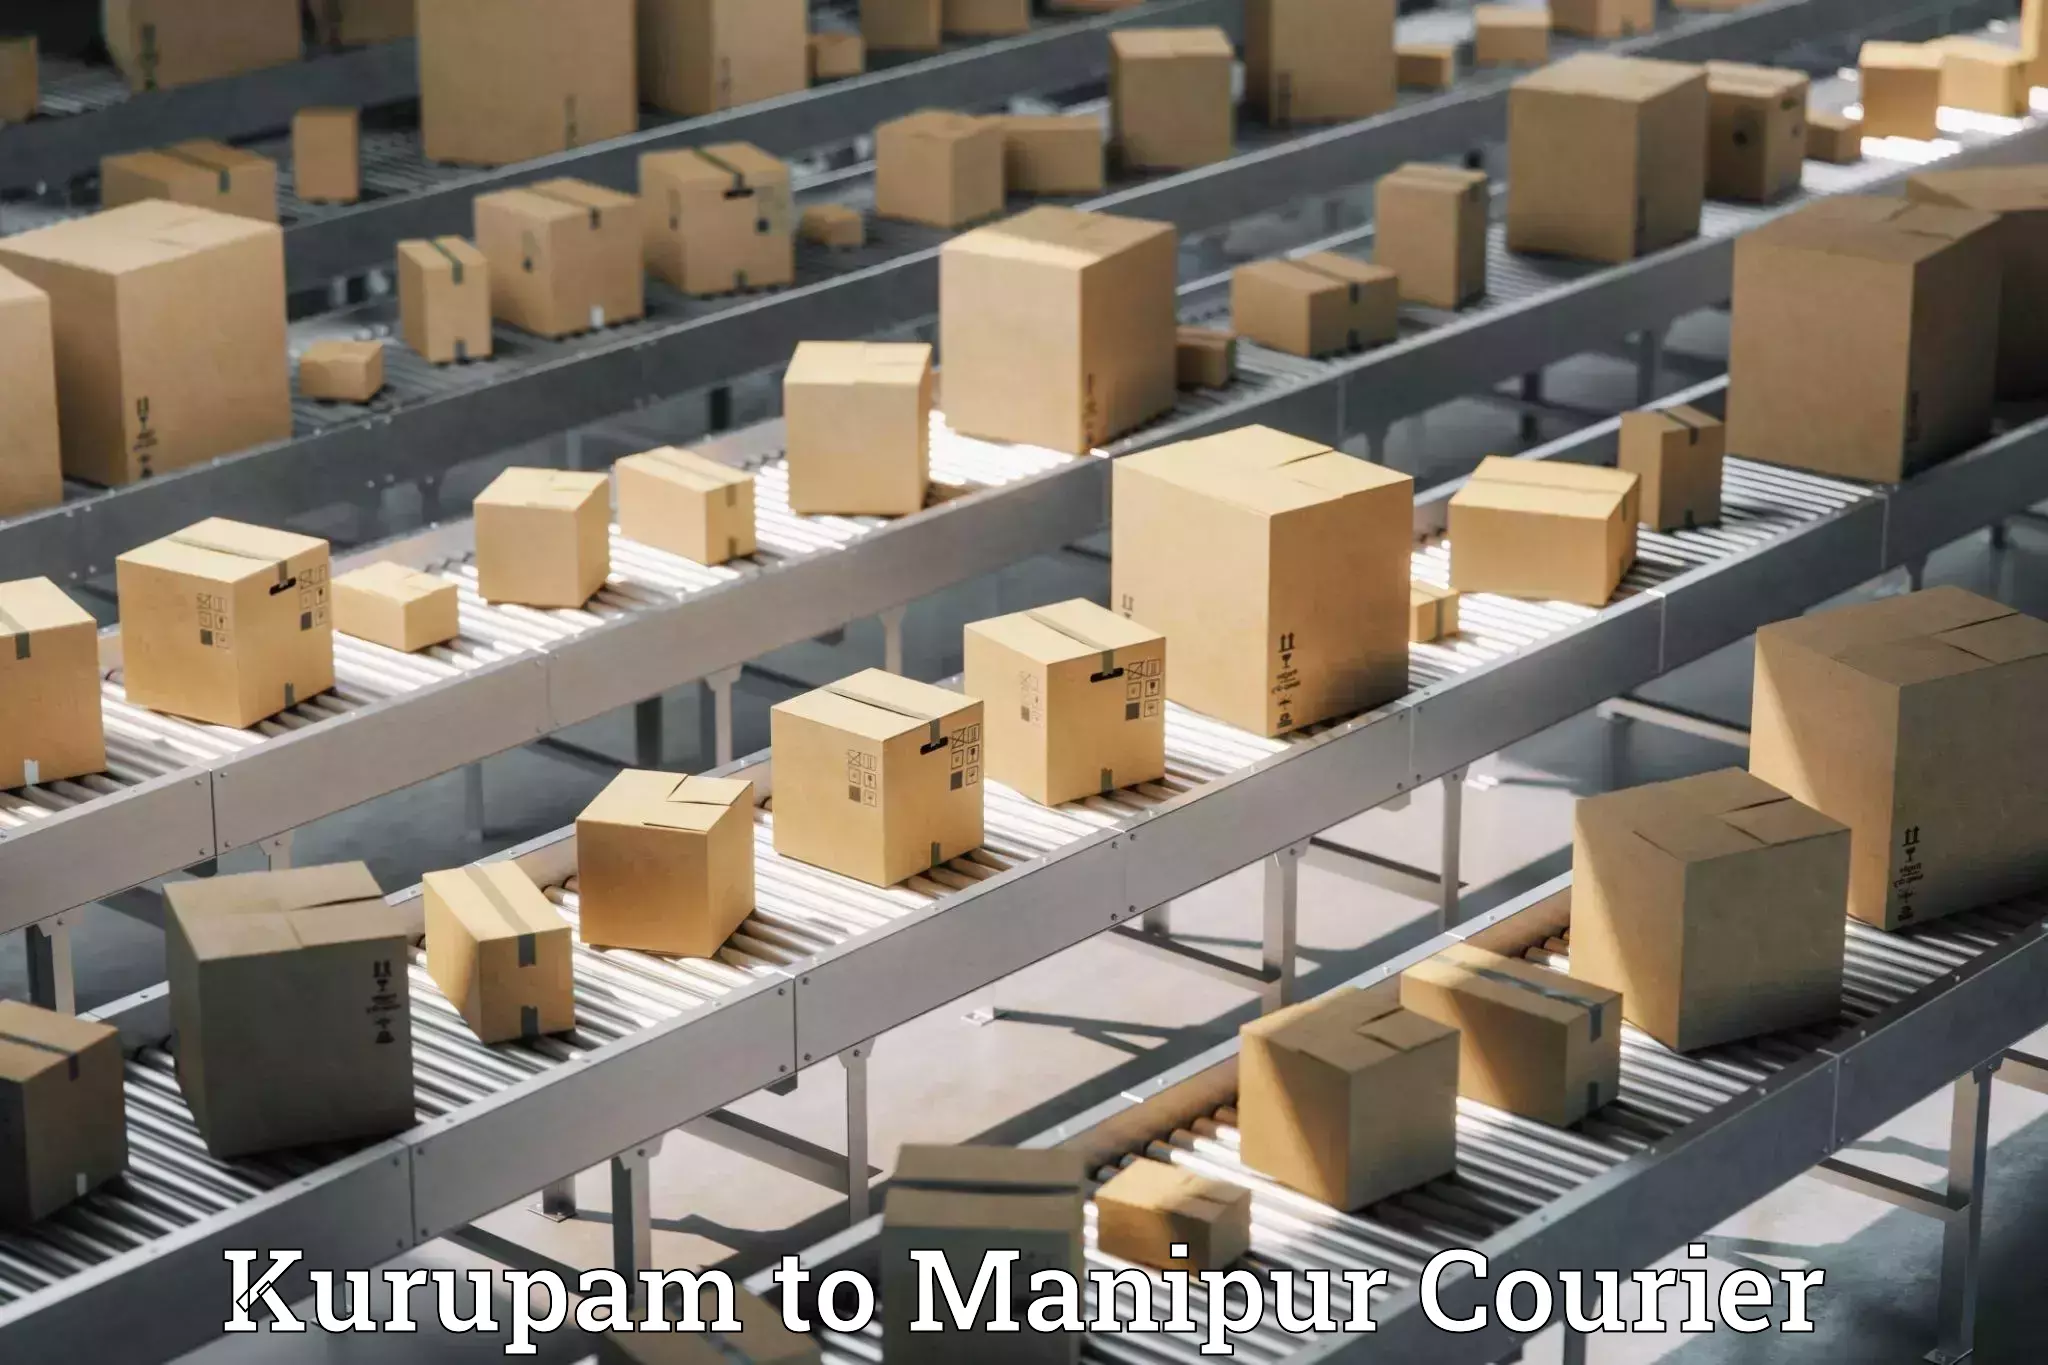 Modern courier technology Kurupam to Manipur